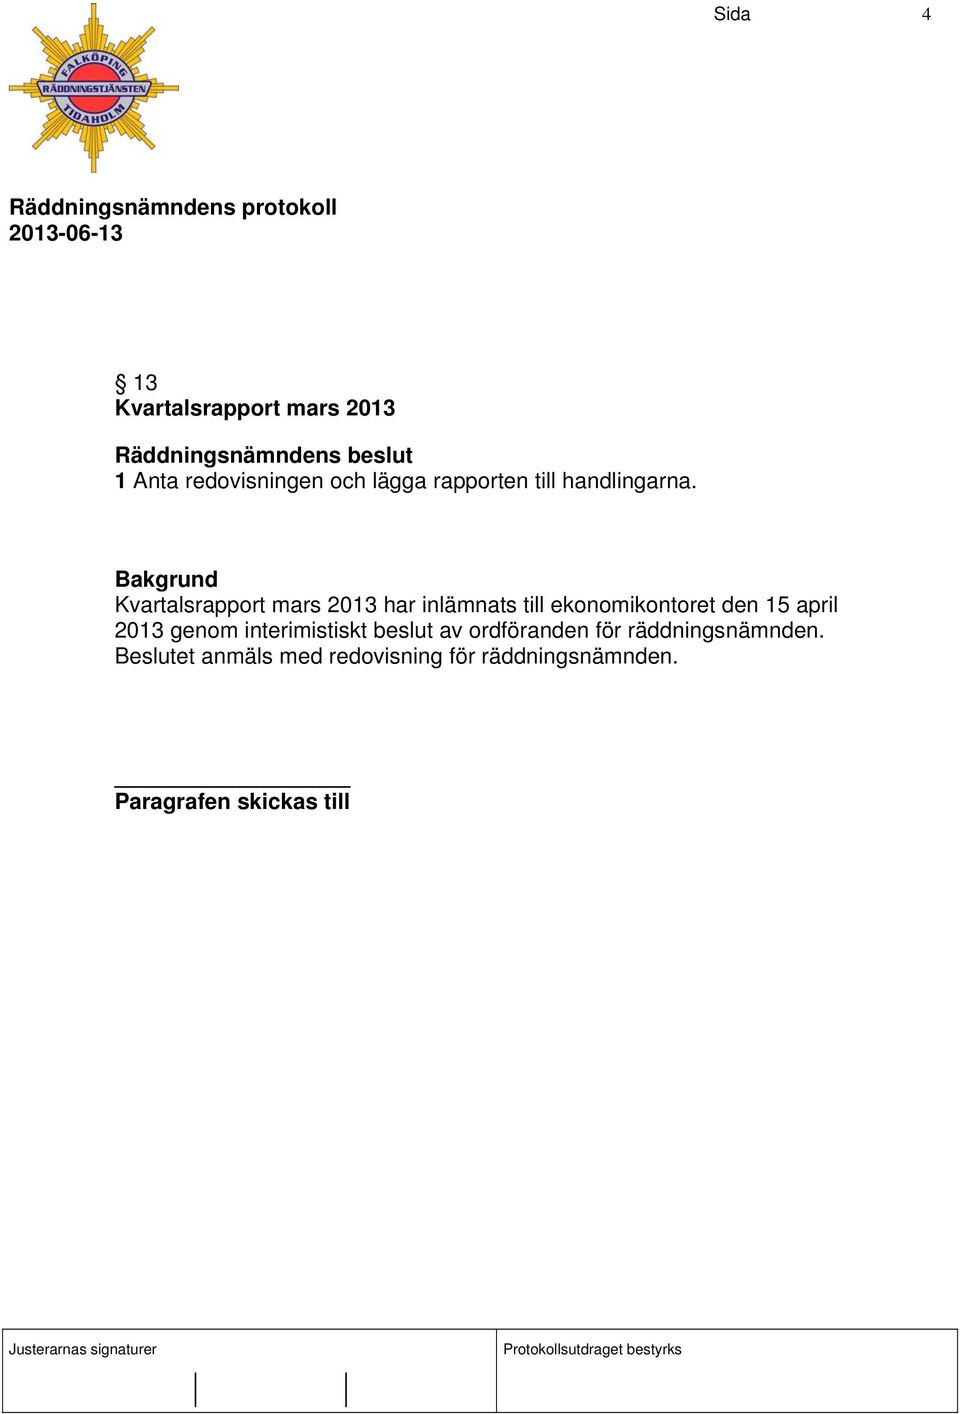 Kvartalsrapport mars 2013 har inlämnats till ekonomikontoret den 15 april 2013